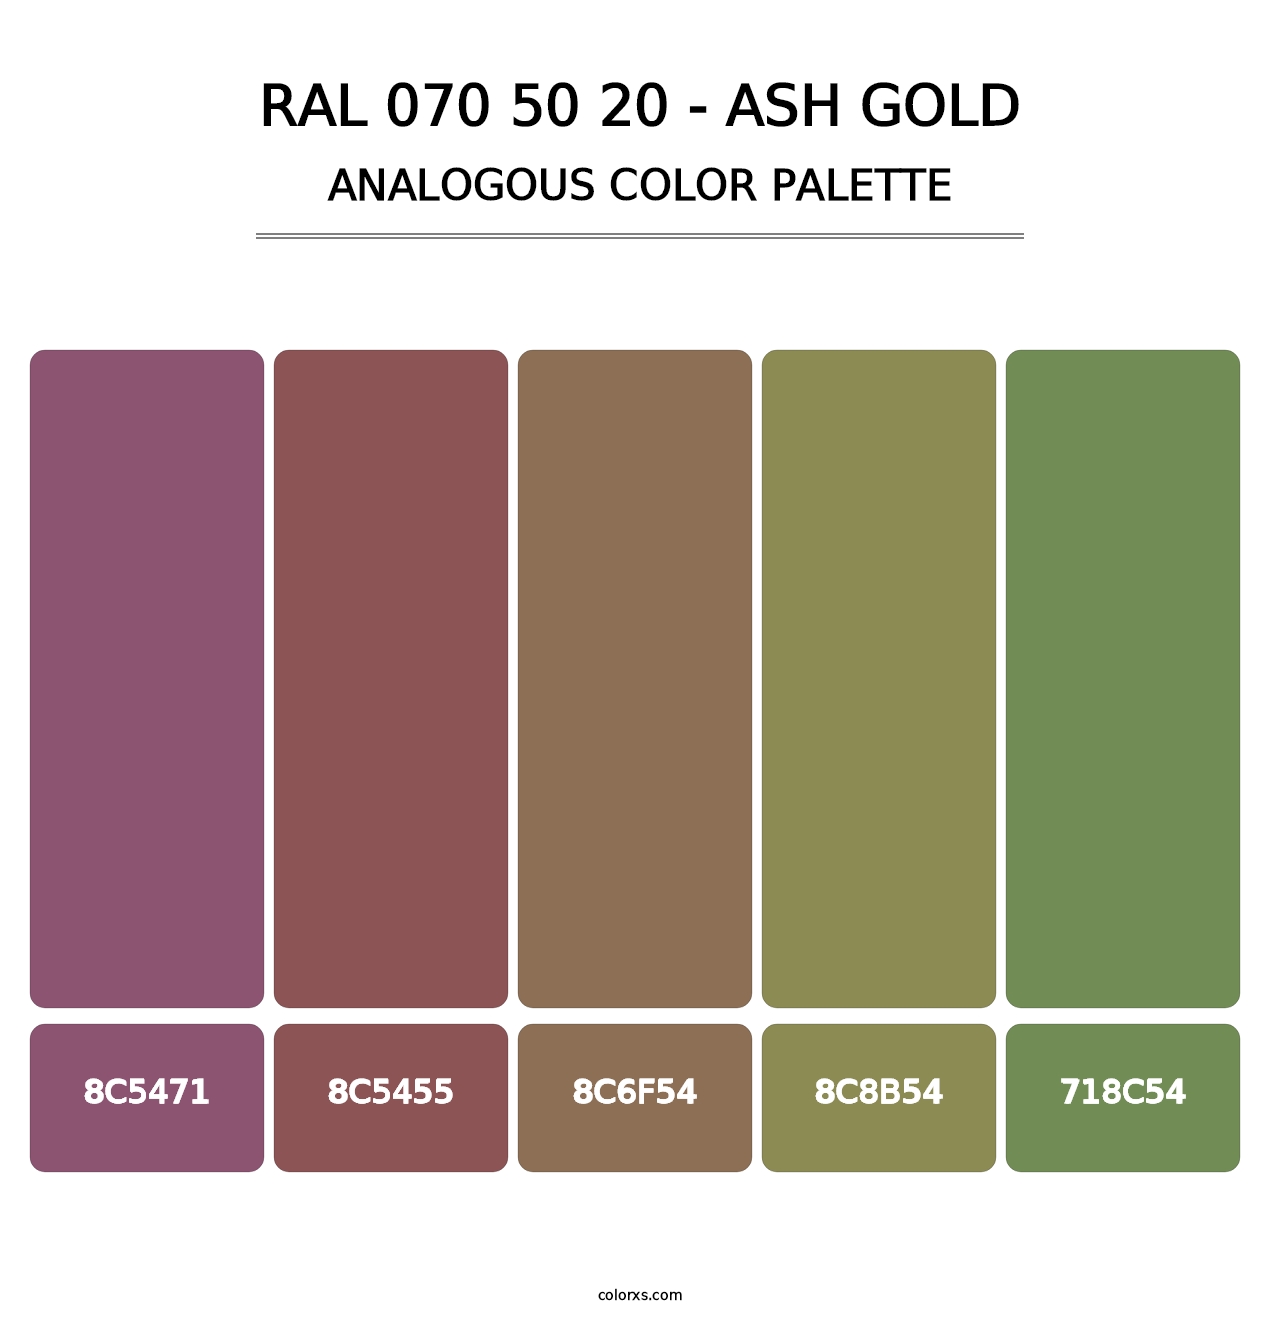 RAL 070 50 20 - Ash Gold - Analogous Color Palette